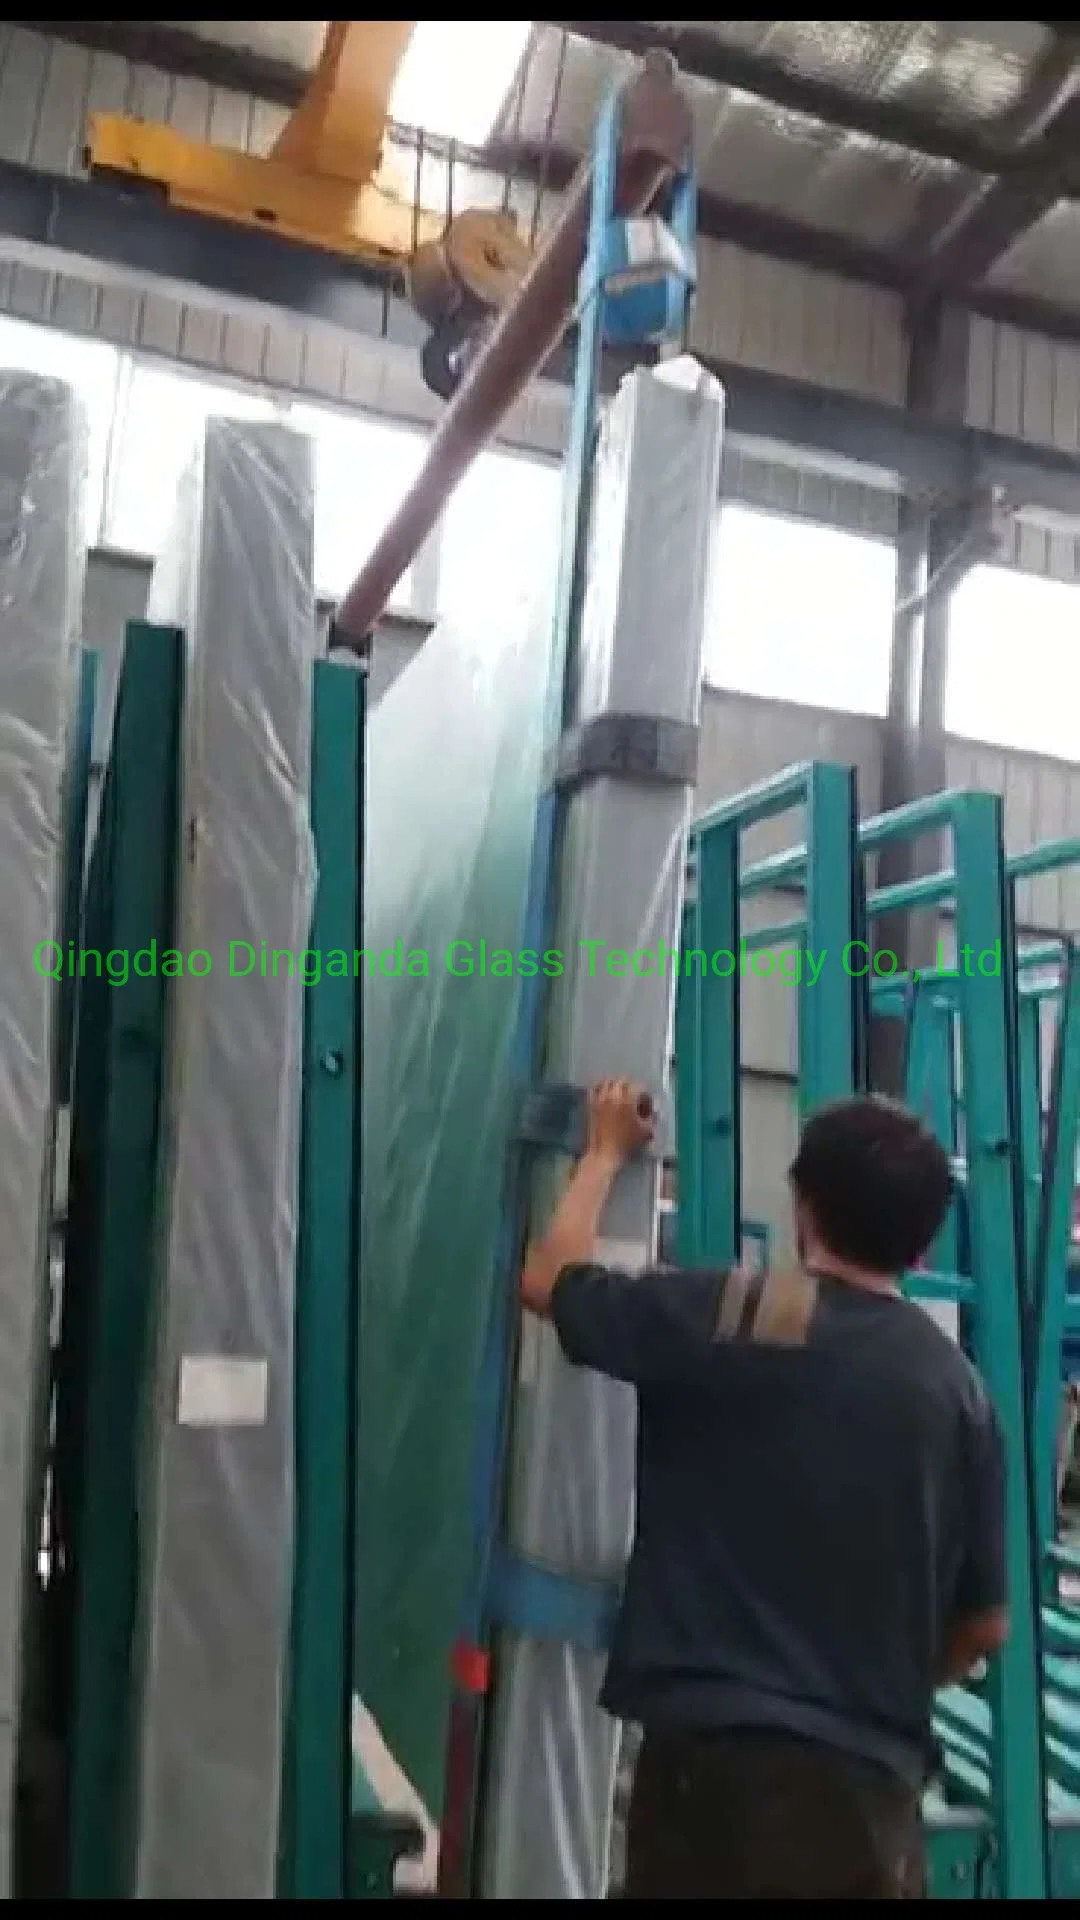 Sistema de porta-paletes de armazenamento de vidro sistema de porta-paletes de armazenamento elétrico